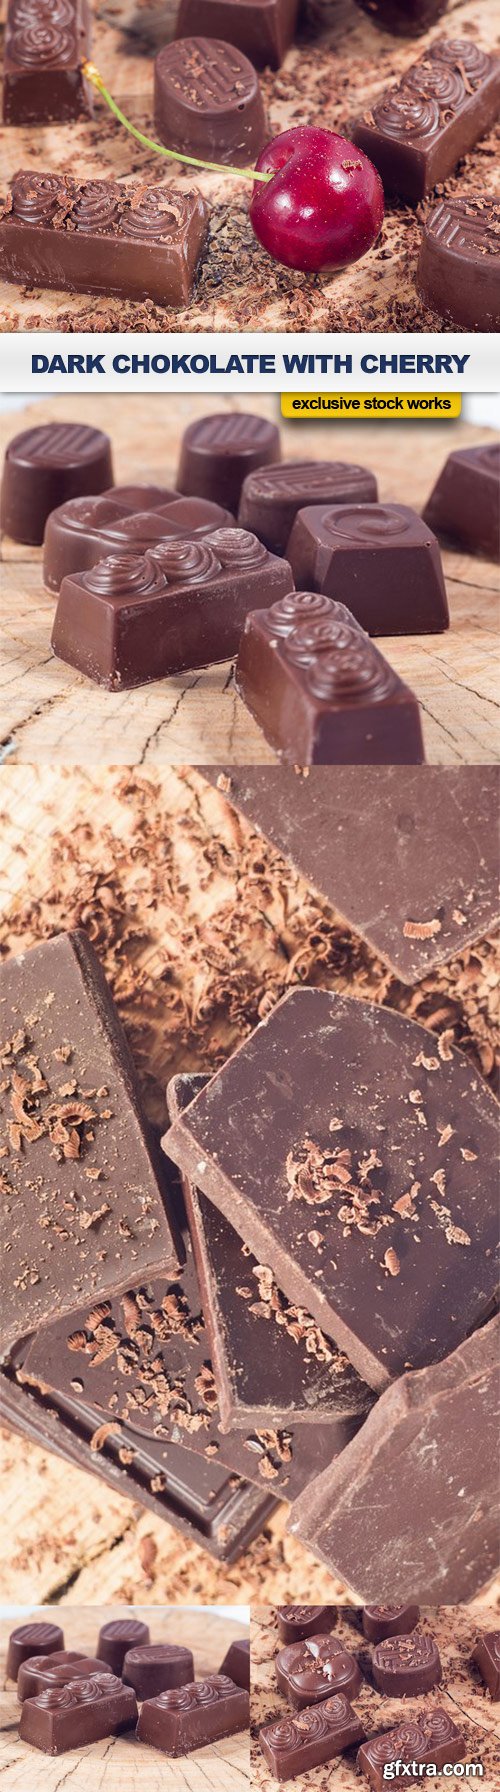 Dark chokolate with cherry - 5 UHQ JPEG